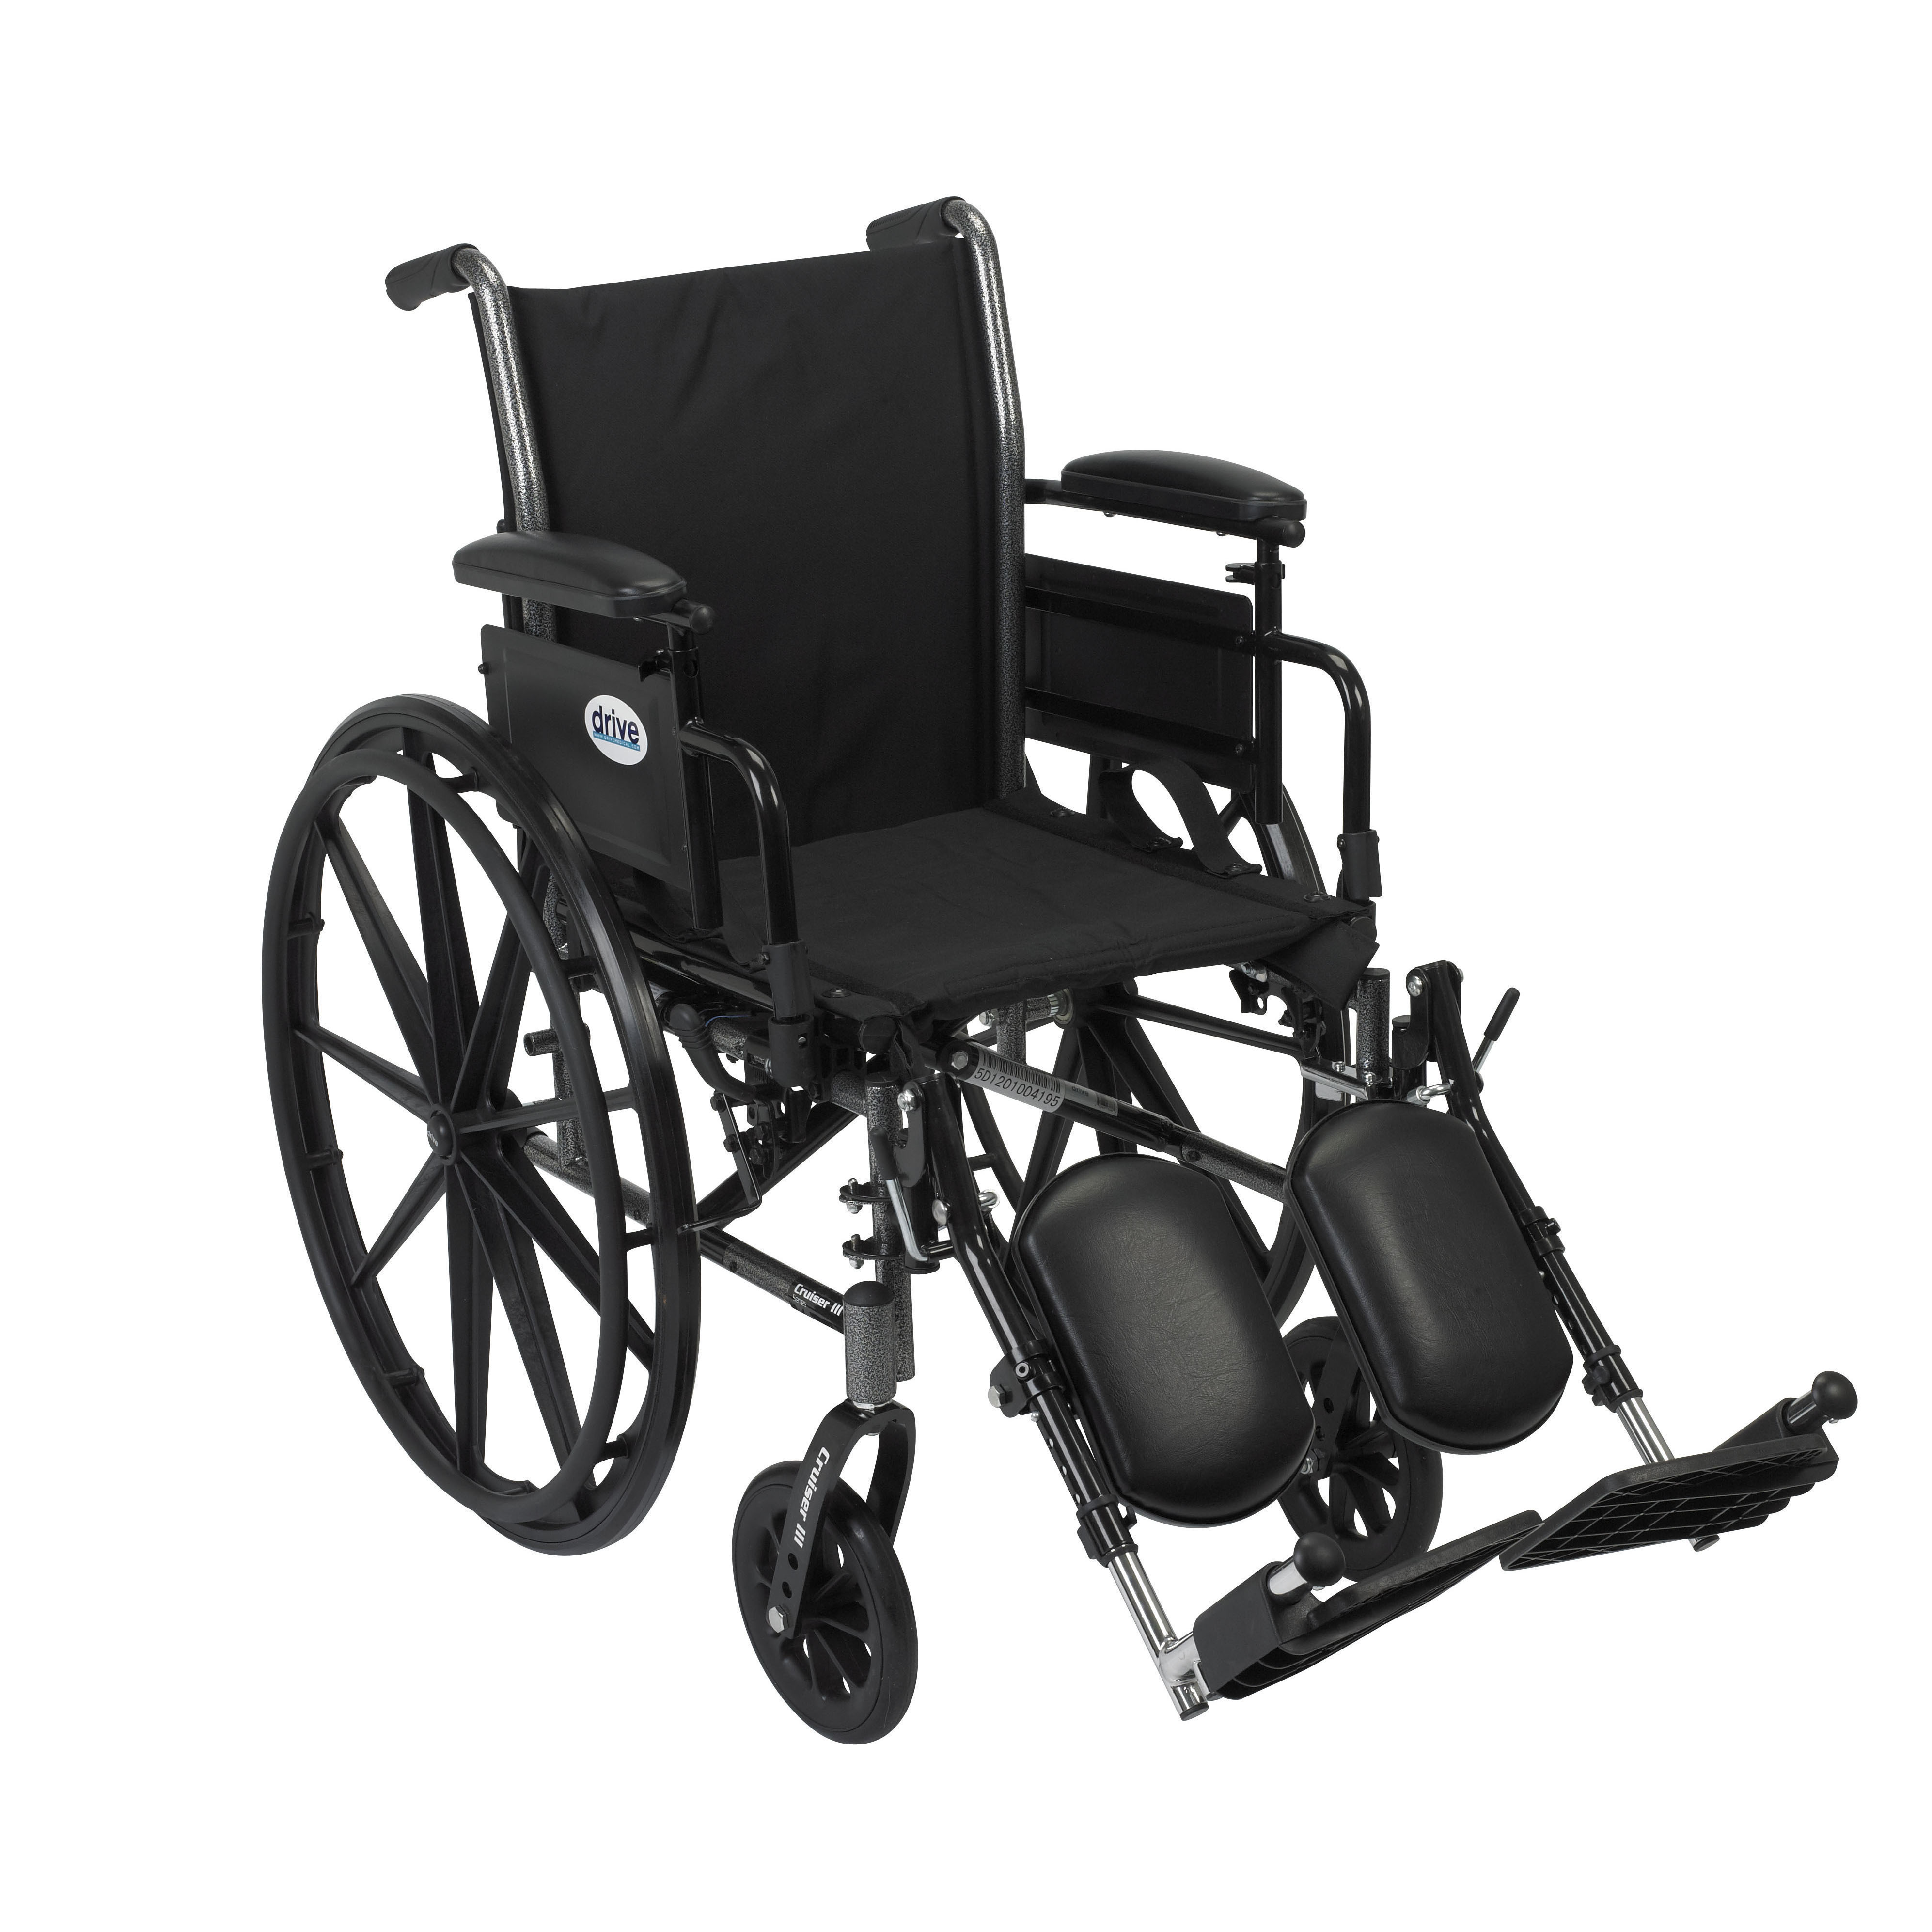 Cruiser III Lightweight Wheelchair, 18